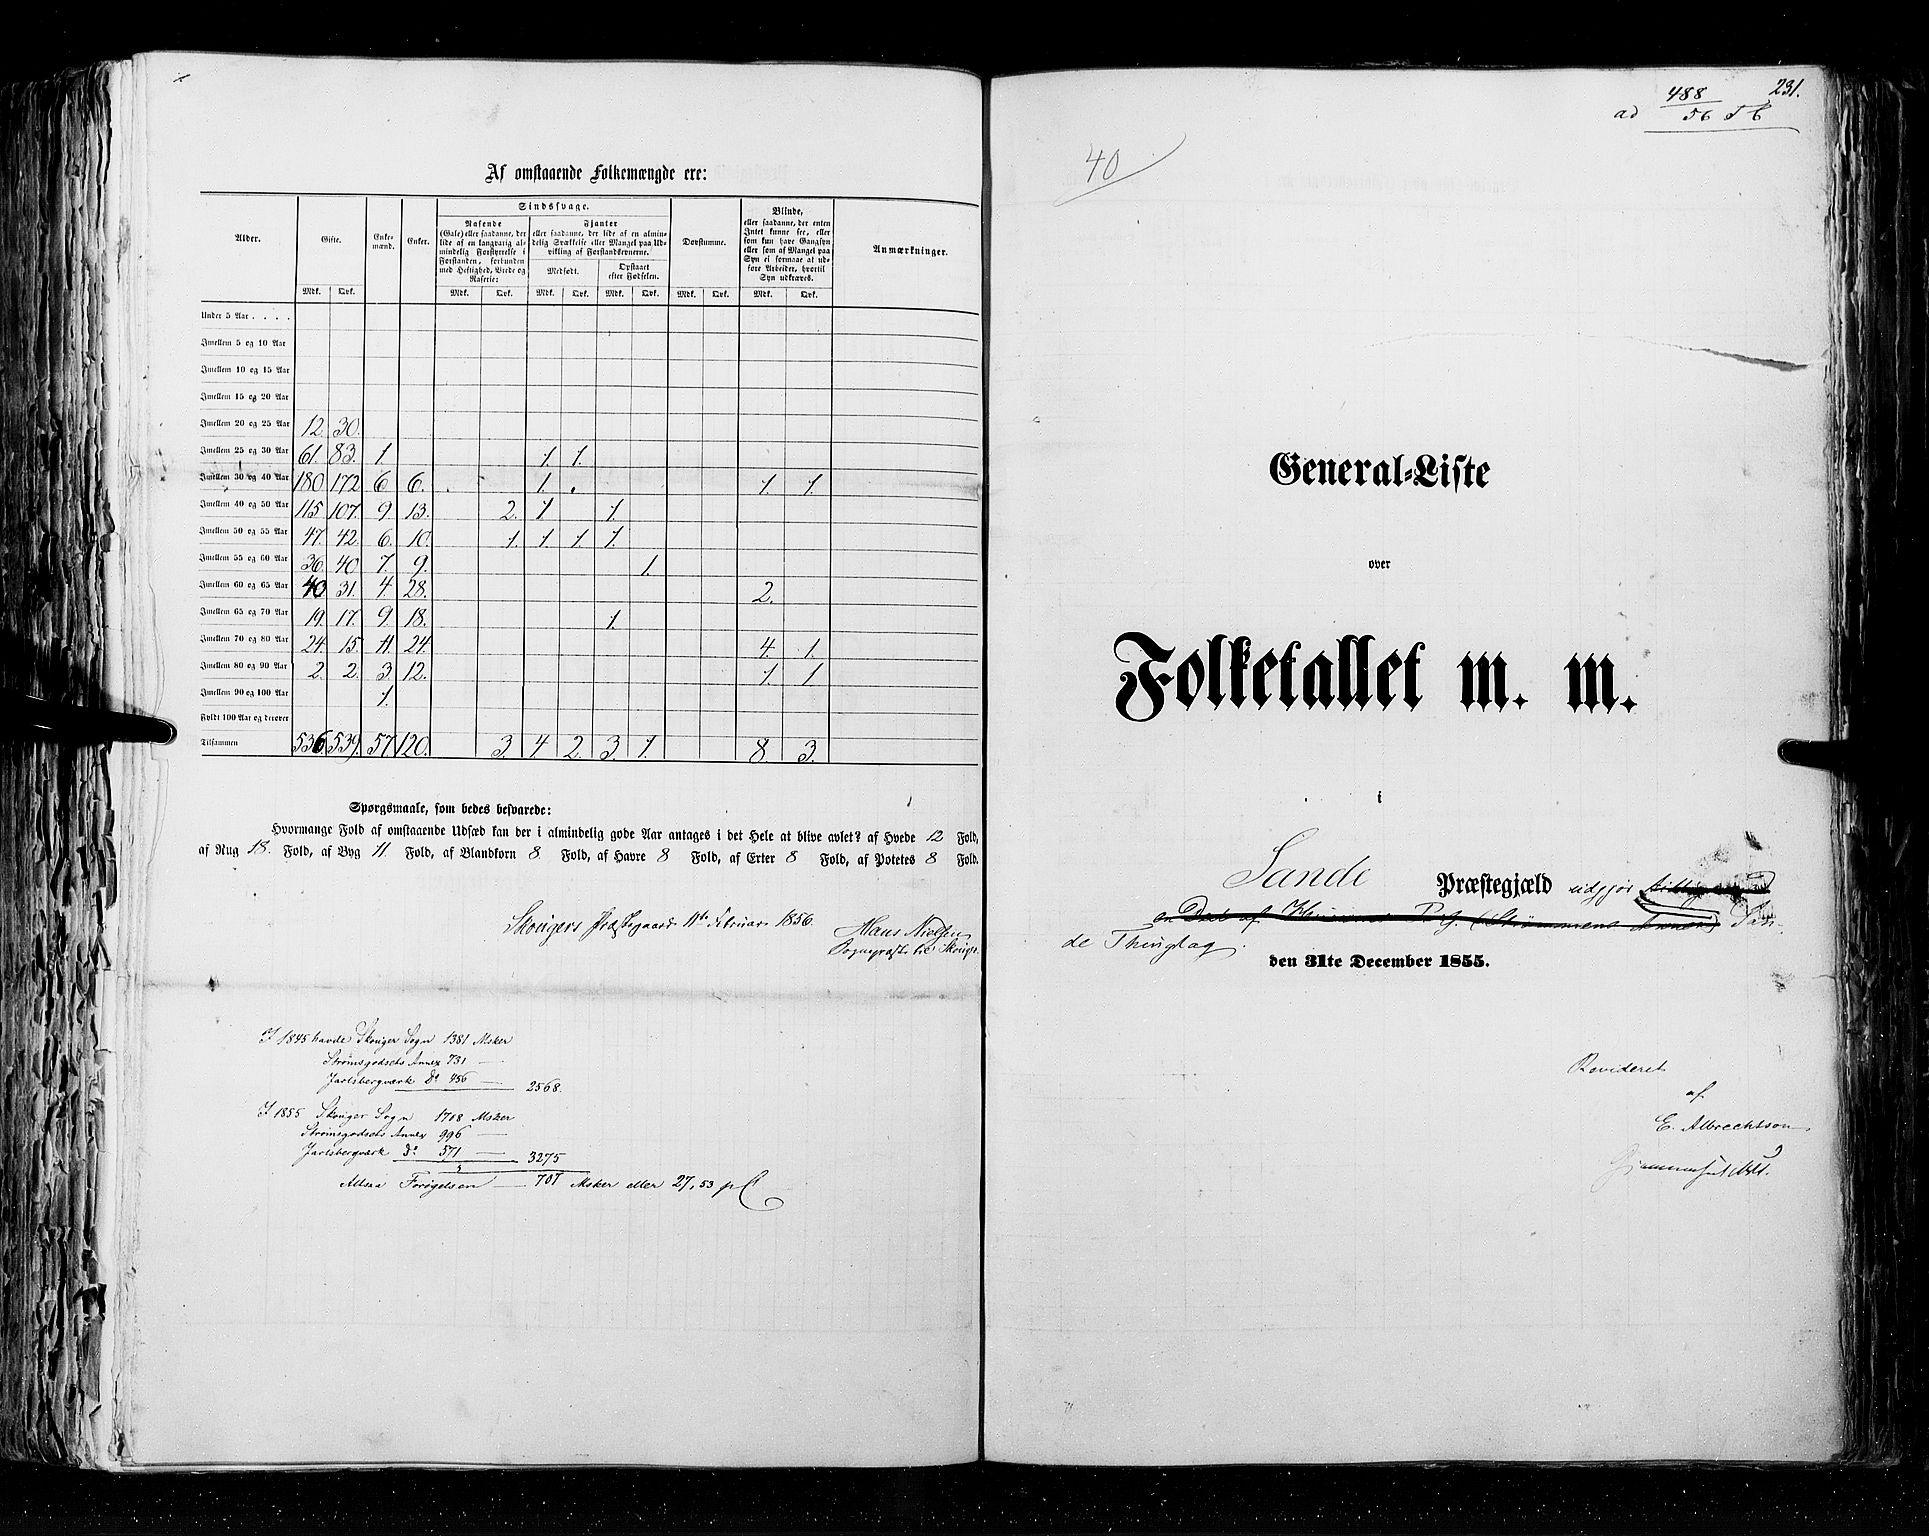 RA, Census 1855, vol. 2: Kristians amt, Buskerud amt og Jarlsberg og Larvik amt, 1855, p. 231